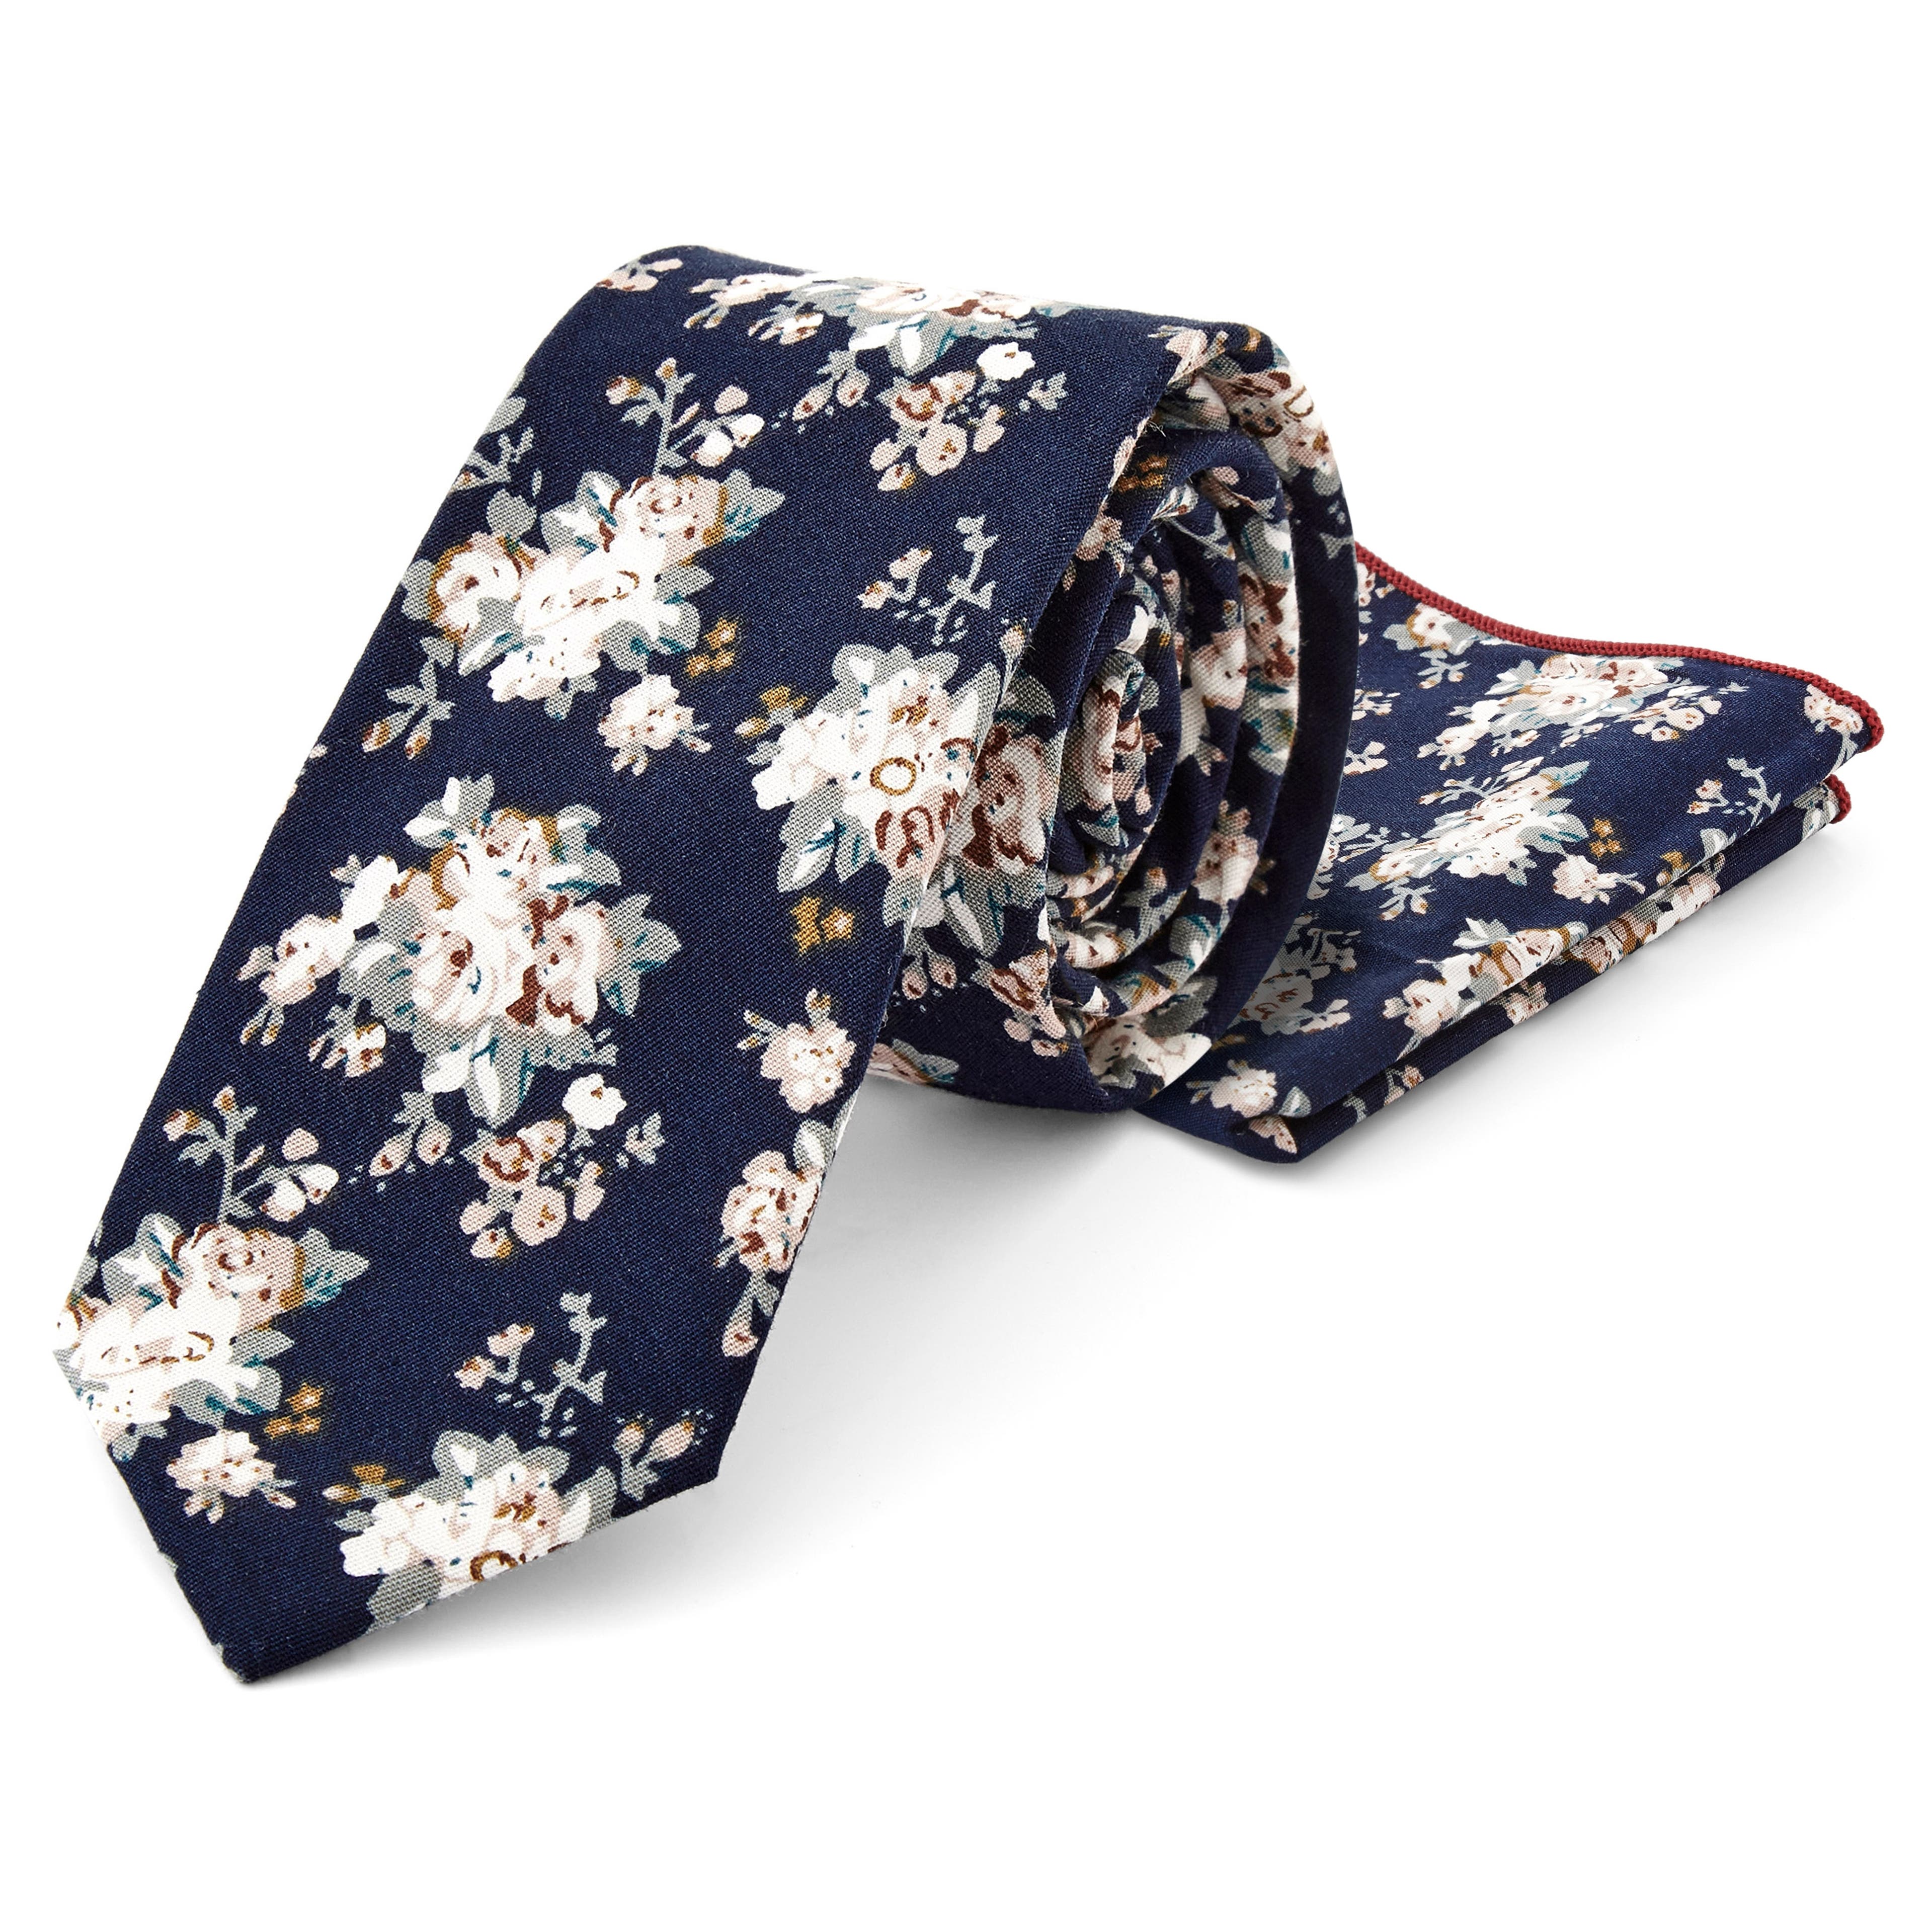 Set met katoenen stropdas en pochet met marineblauwe en witte bloemenprint